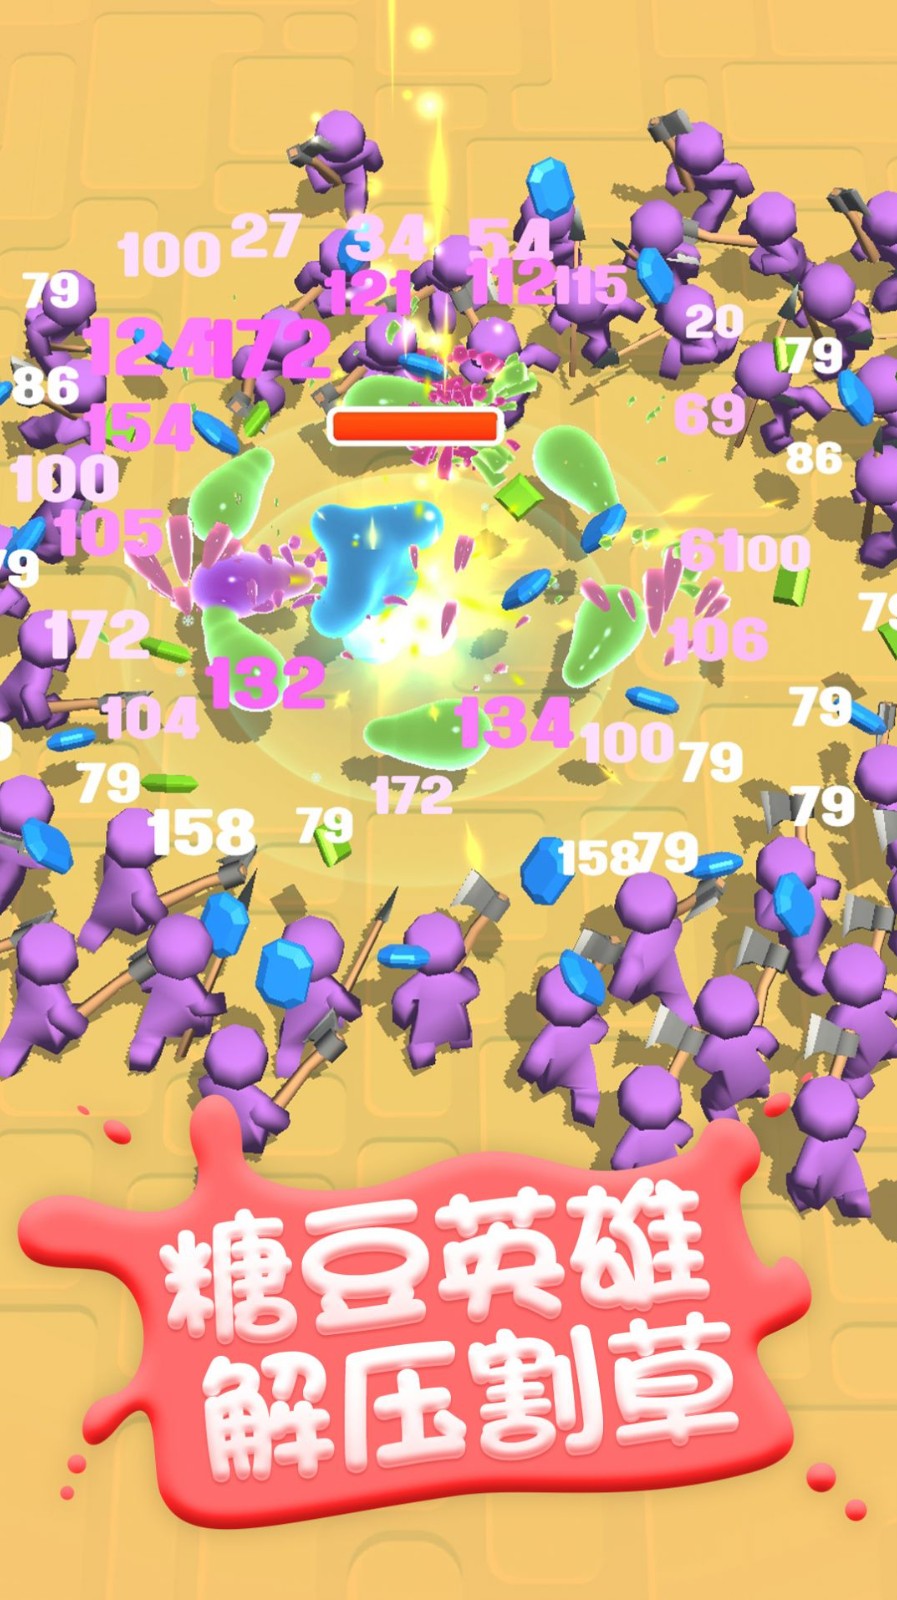 糖豆人挑战赛单机版游戏安卓版v1.5